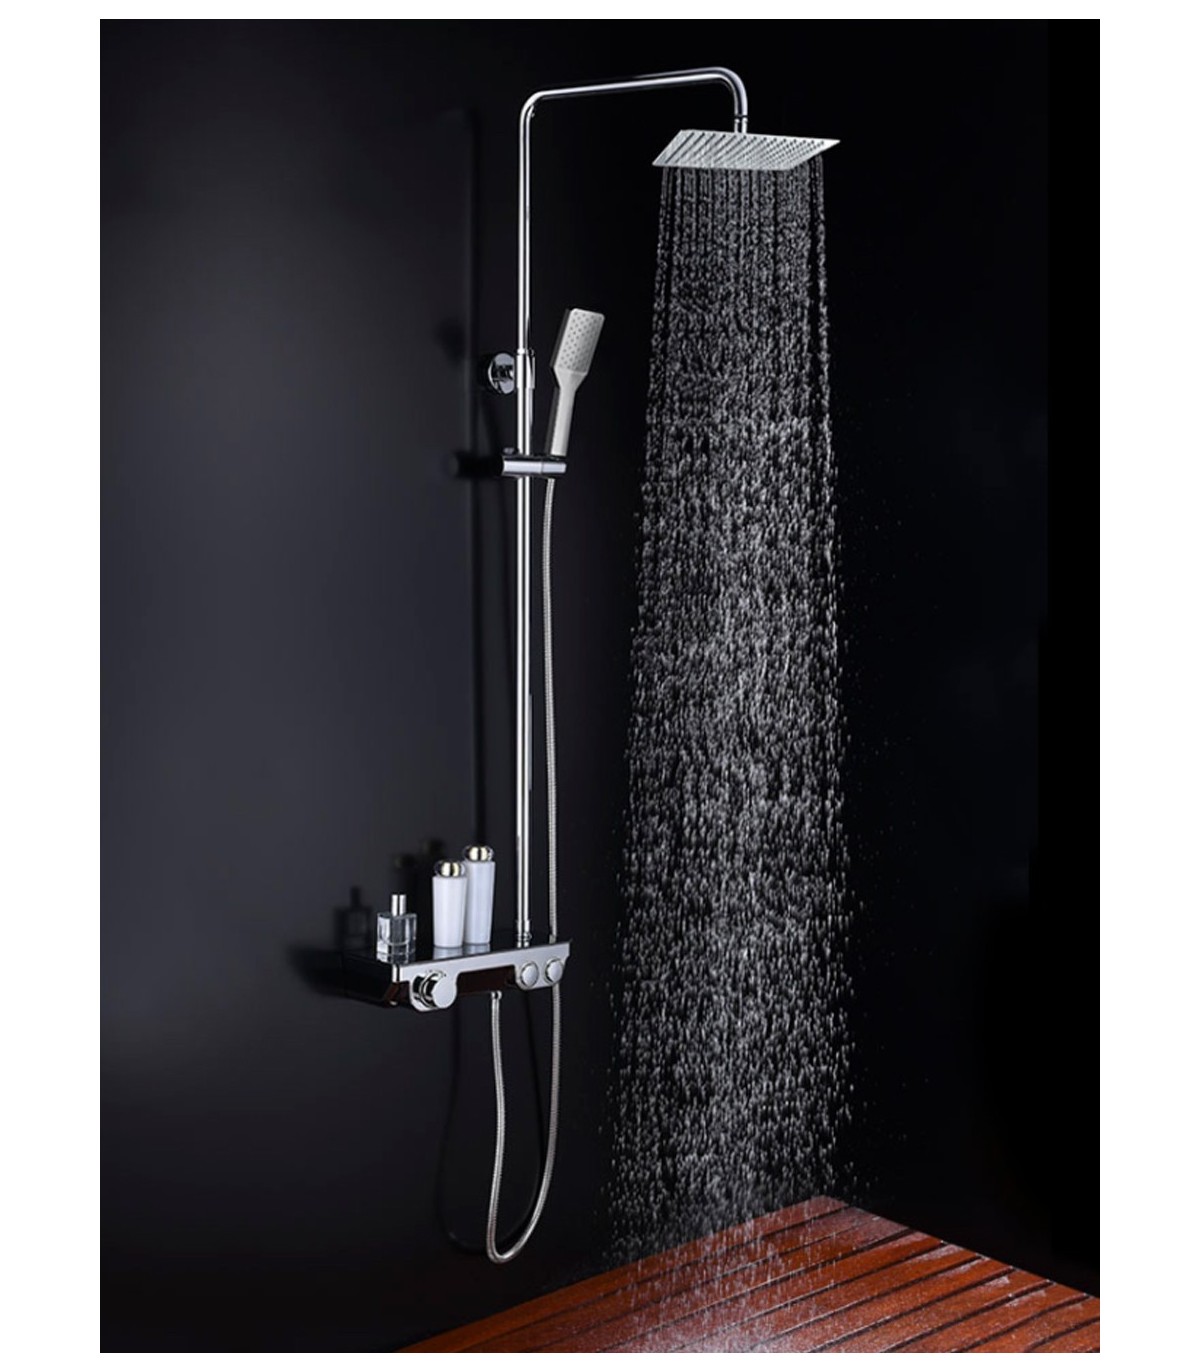 Set de ducha termostático Boal - Todo Ducha Distribuciones